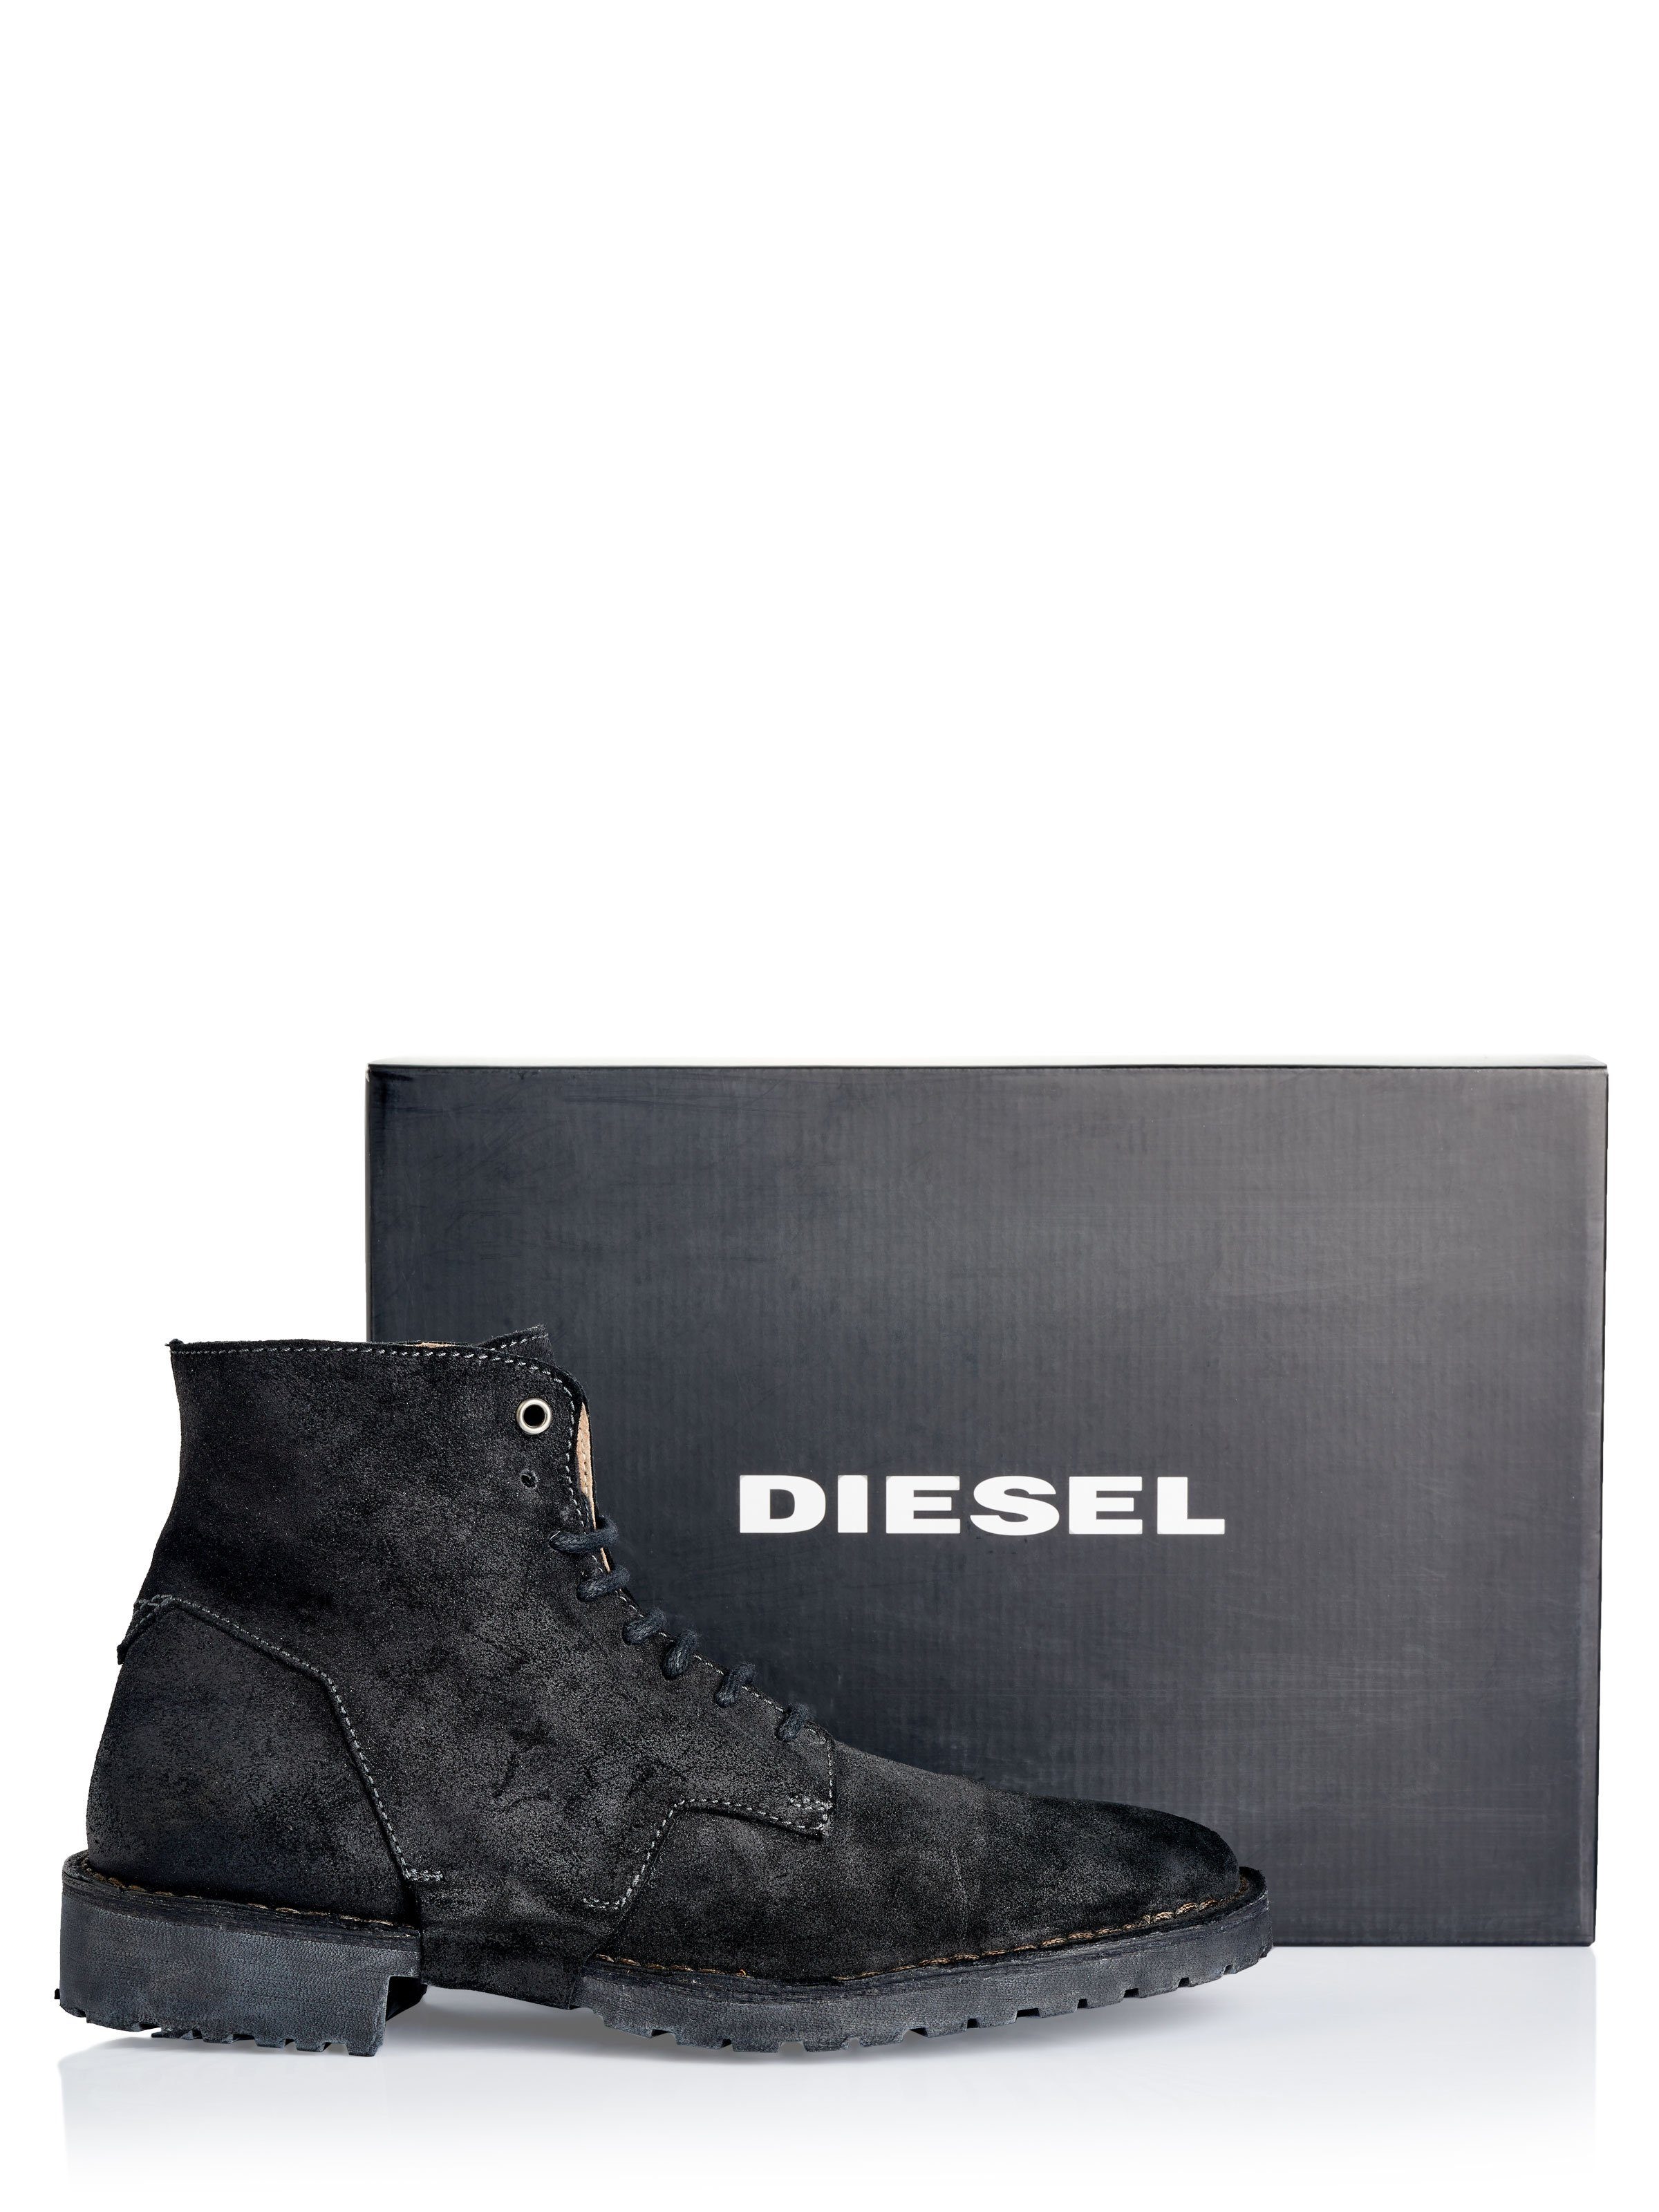 Diesel Stiefel Ankleboots Diesel